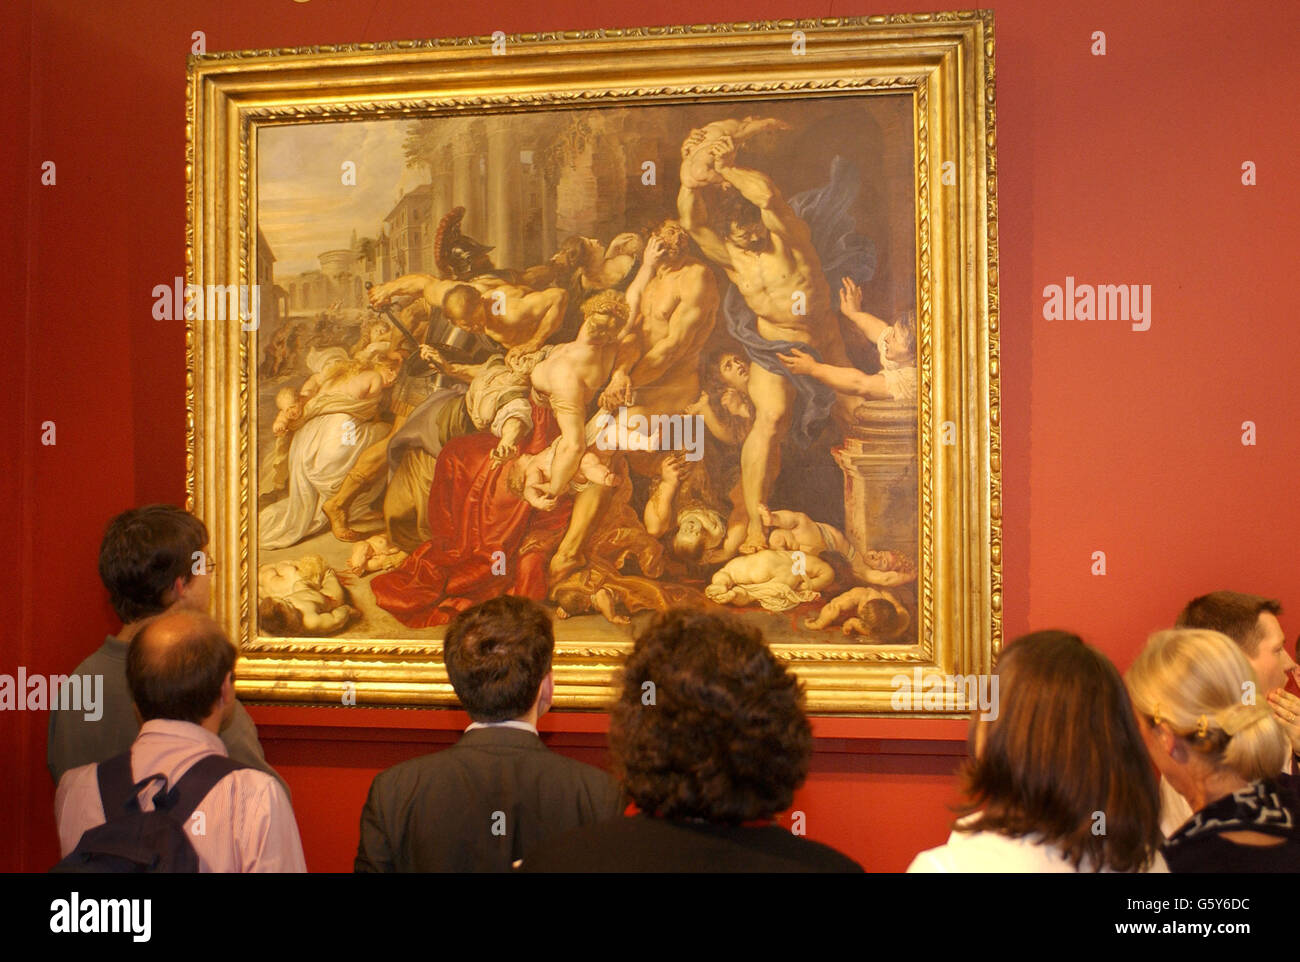 Le massacre des innocents, vers 1609-11 par l'artiste flamand du XVIIe siècle Peter Paul Rubens, est vu à Sotheby' à Londres, où la peinture s'était vendue plus tôt ce soir pour 49,506,650 millions lors de la vente d'œuvres d'art anciennes. Banque D'Images